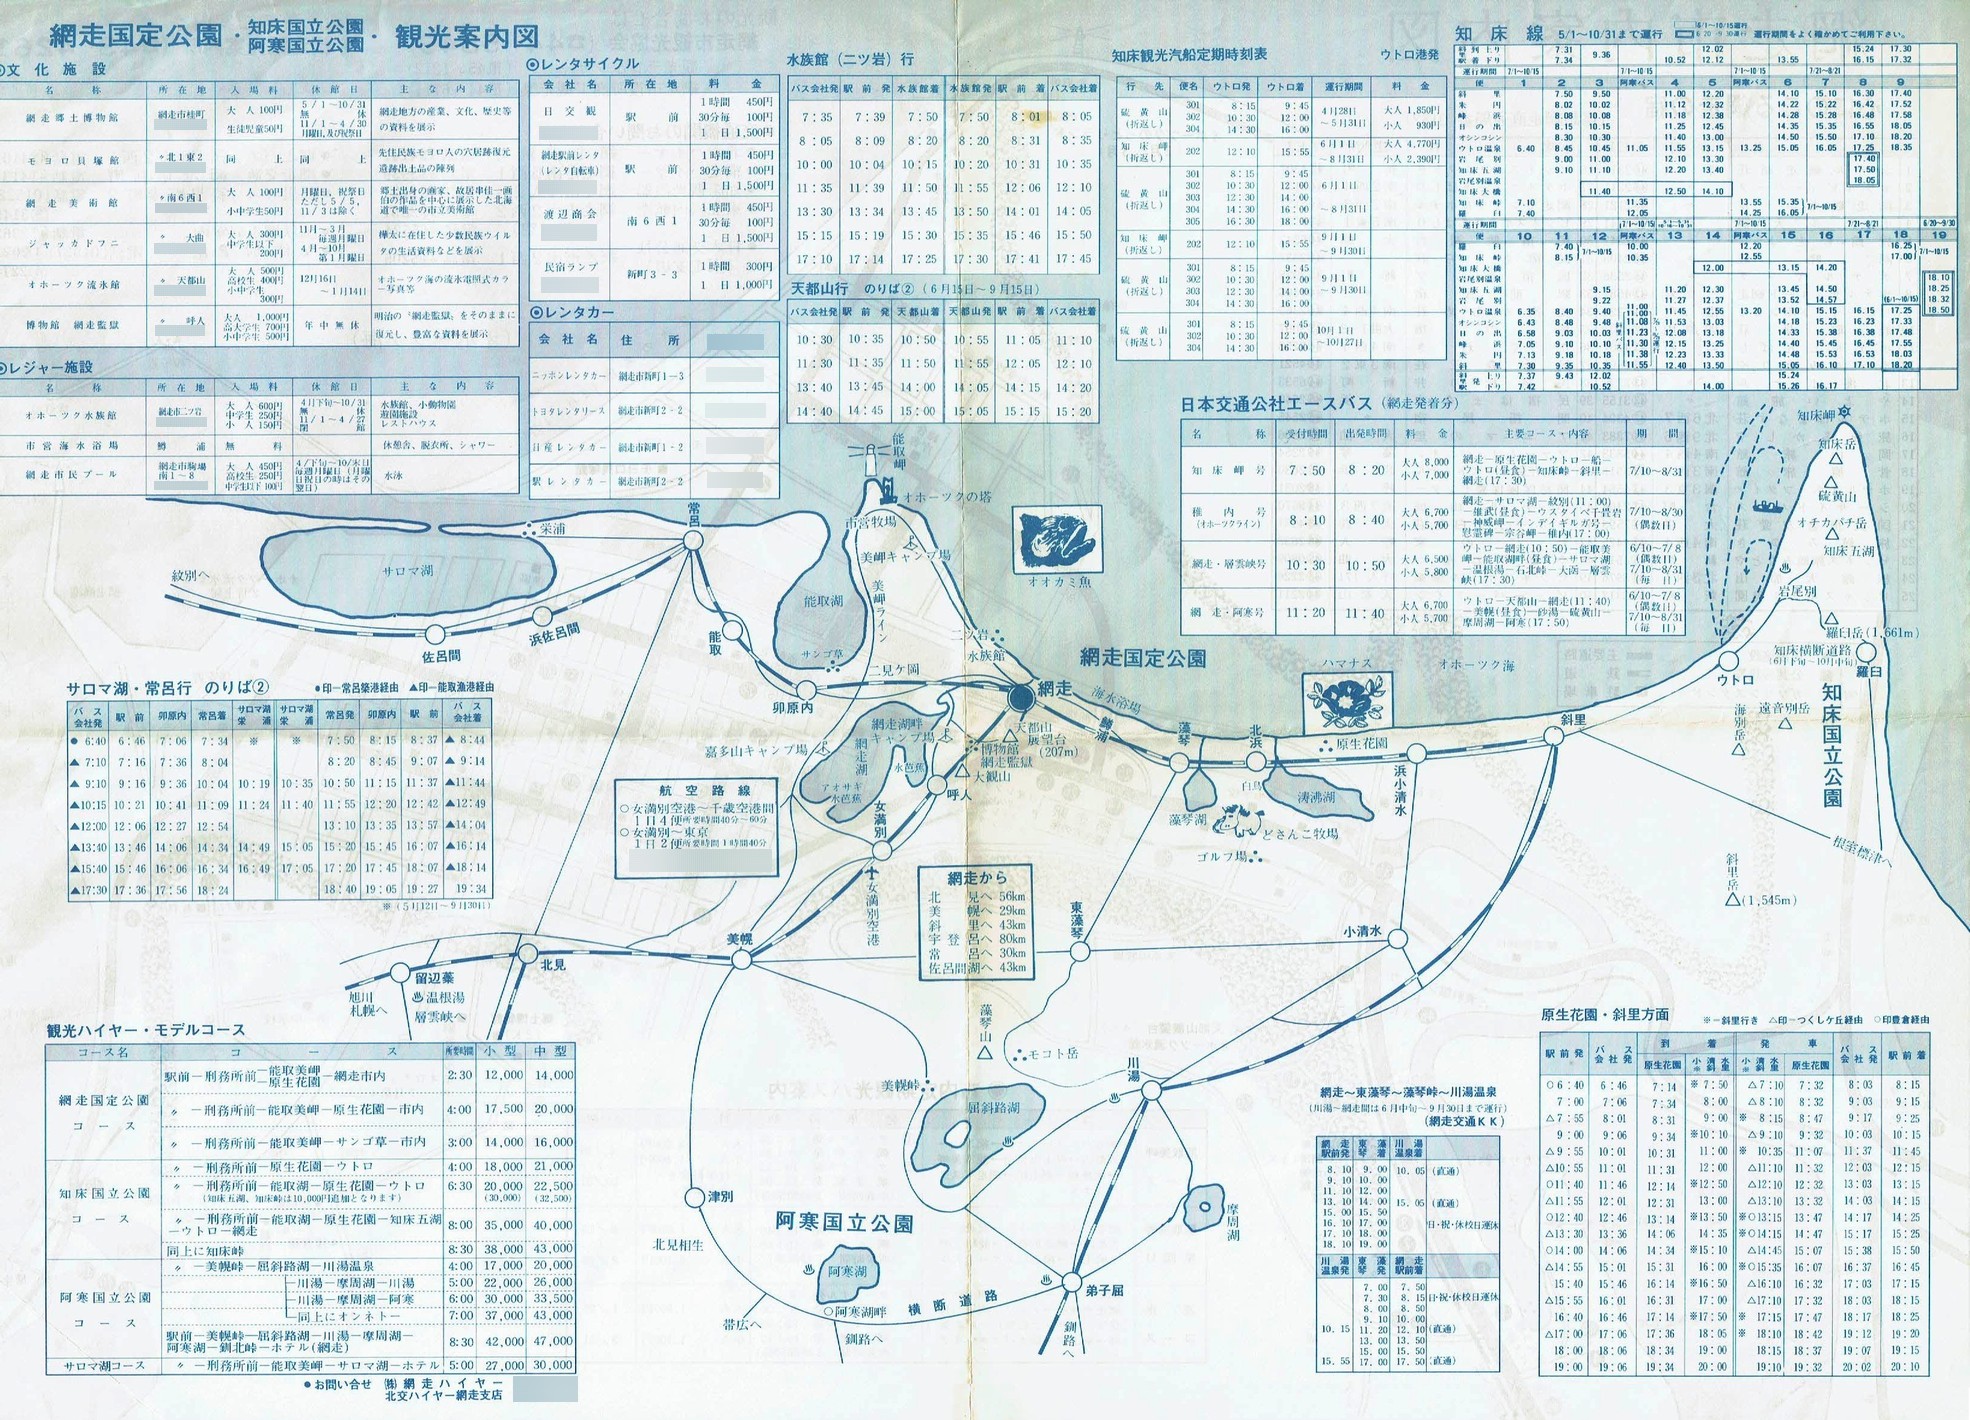 1985-05-01現在_網走市観光協会_網走市内案内図裏面